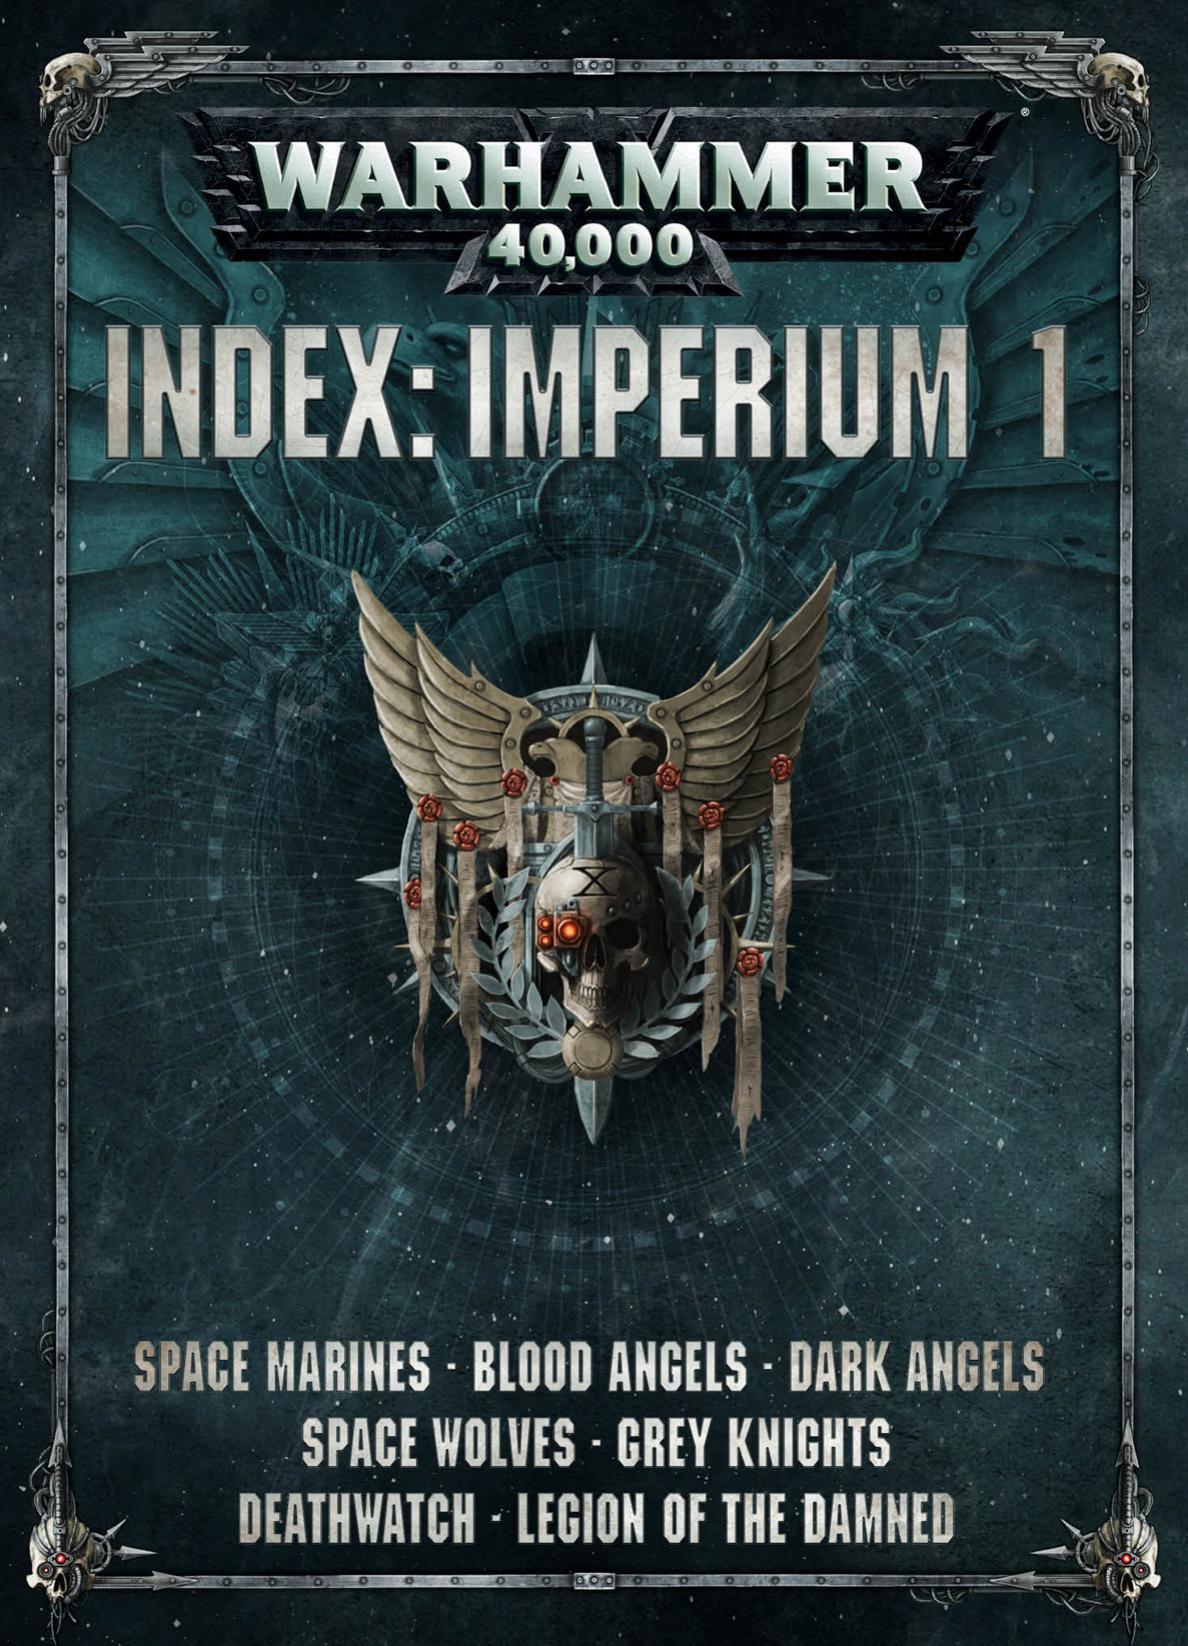 Index: Imperium 1